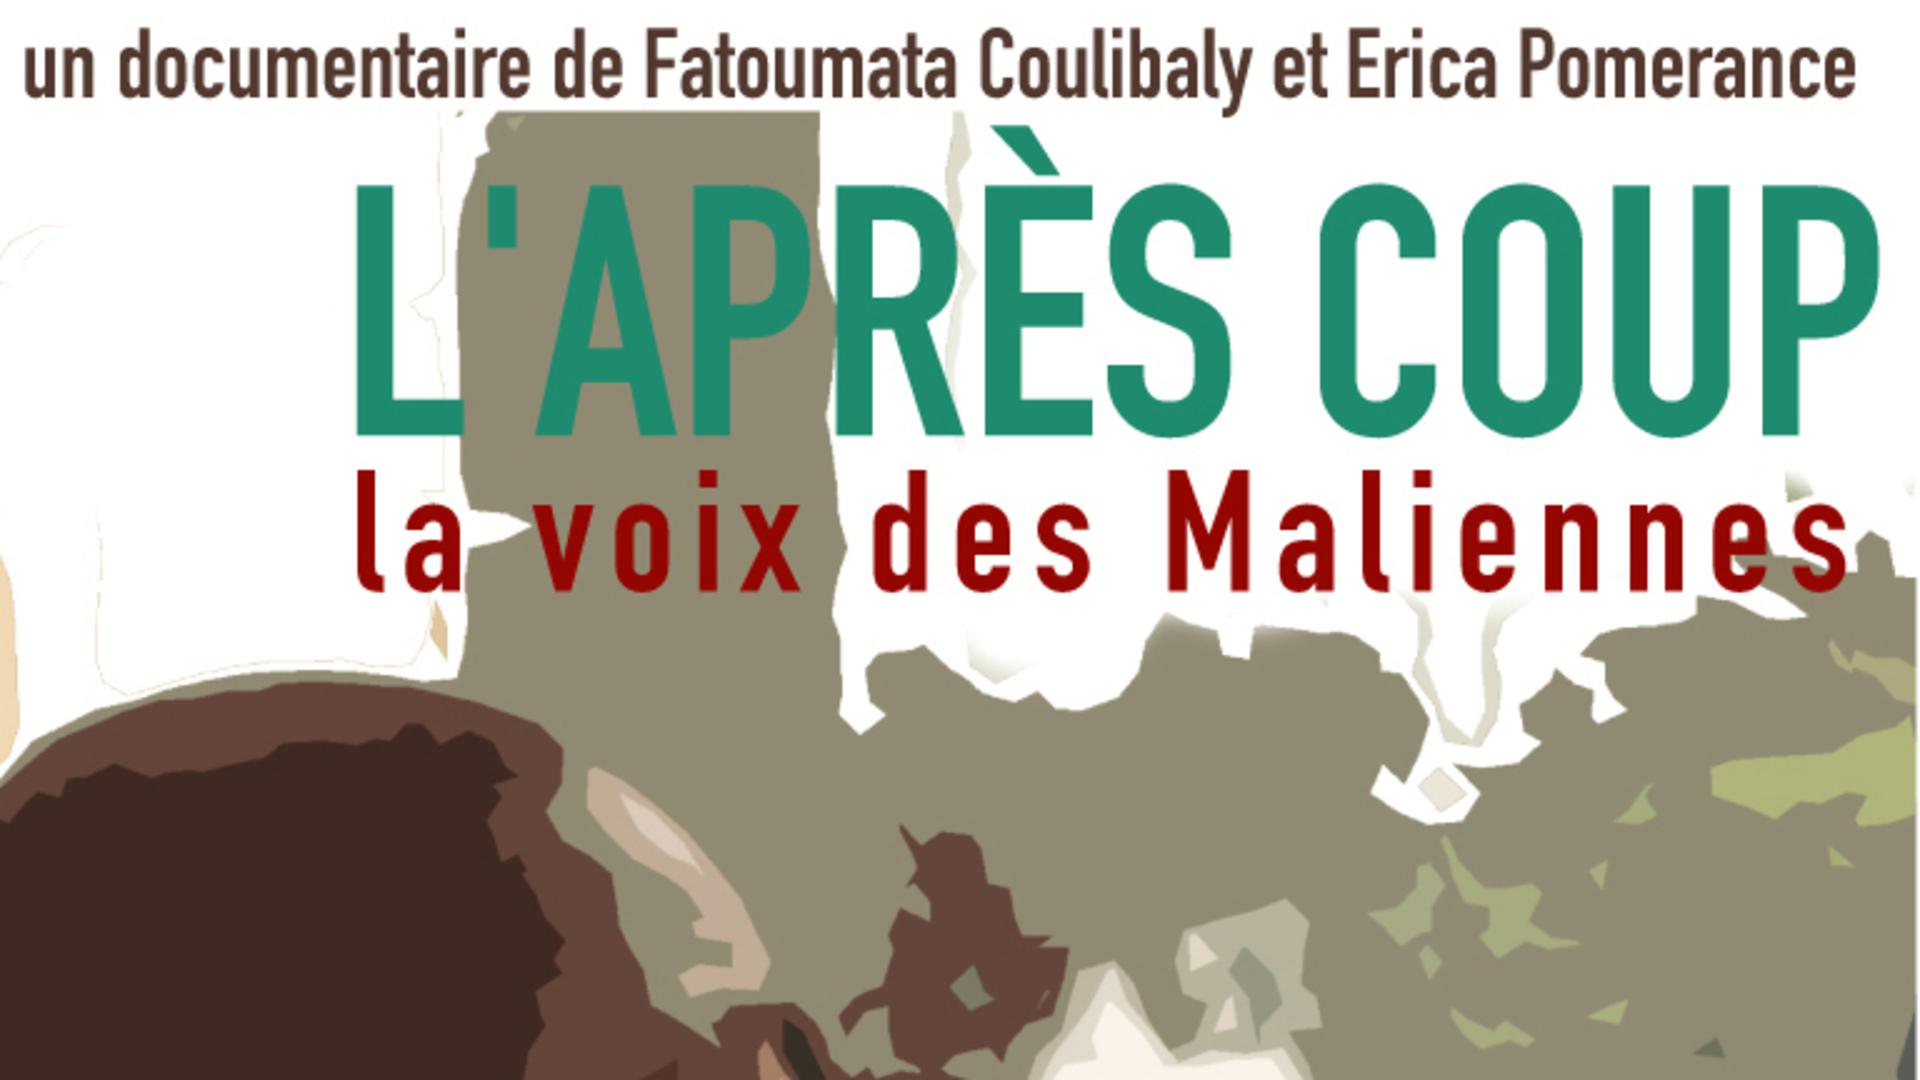 After the Coup, Malian women speak